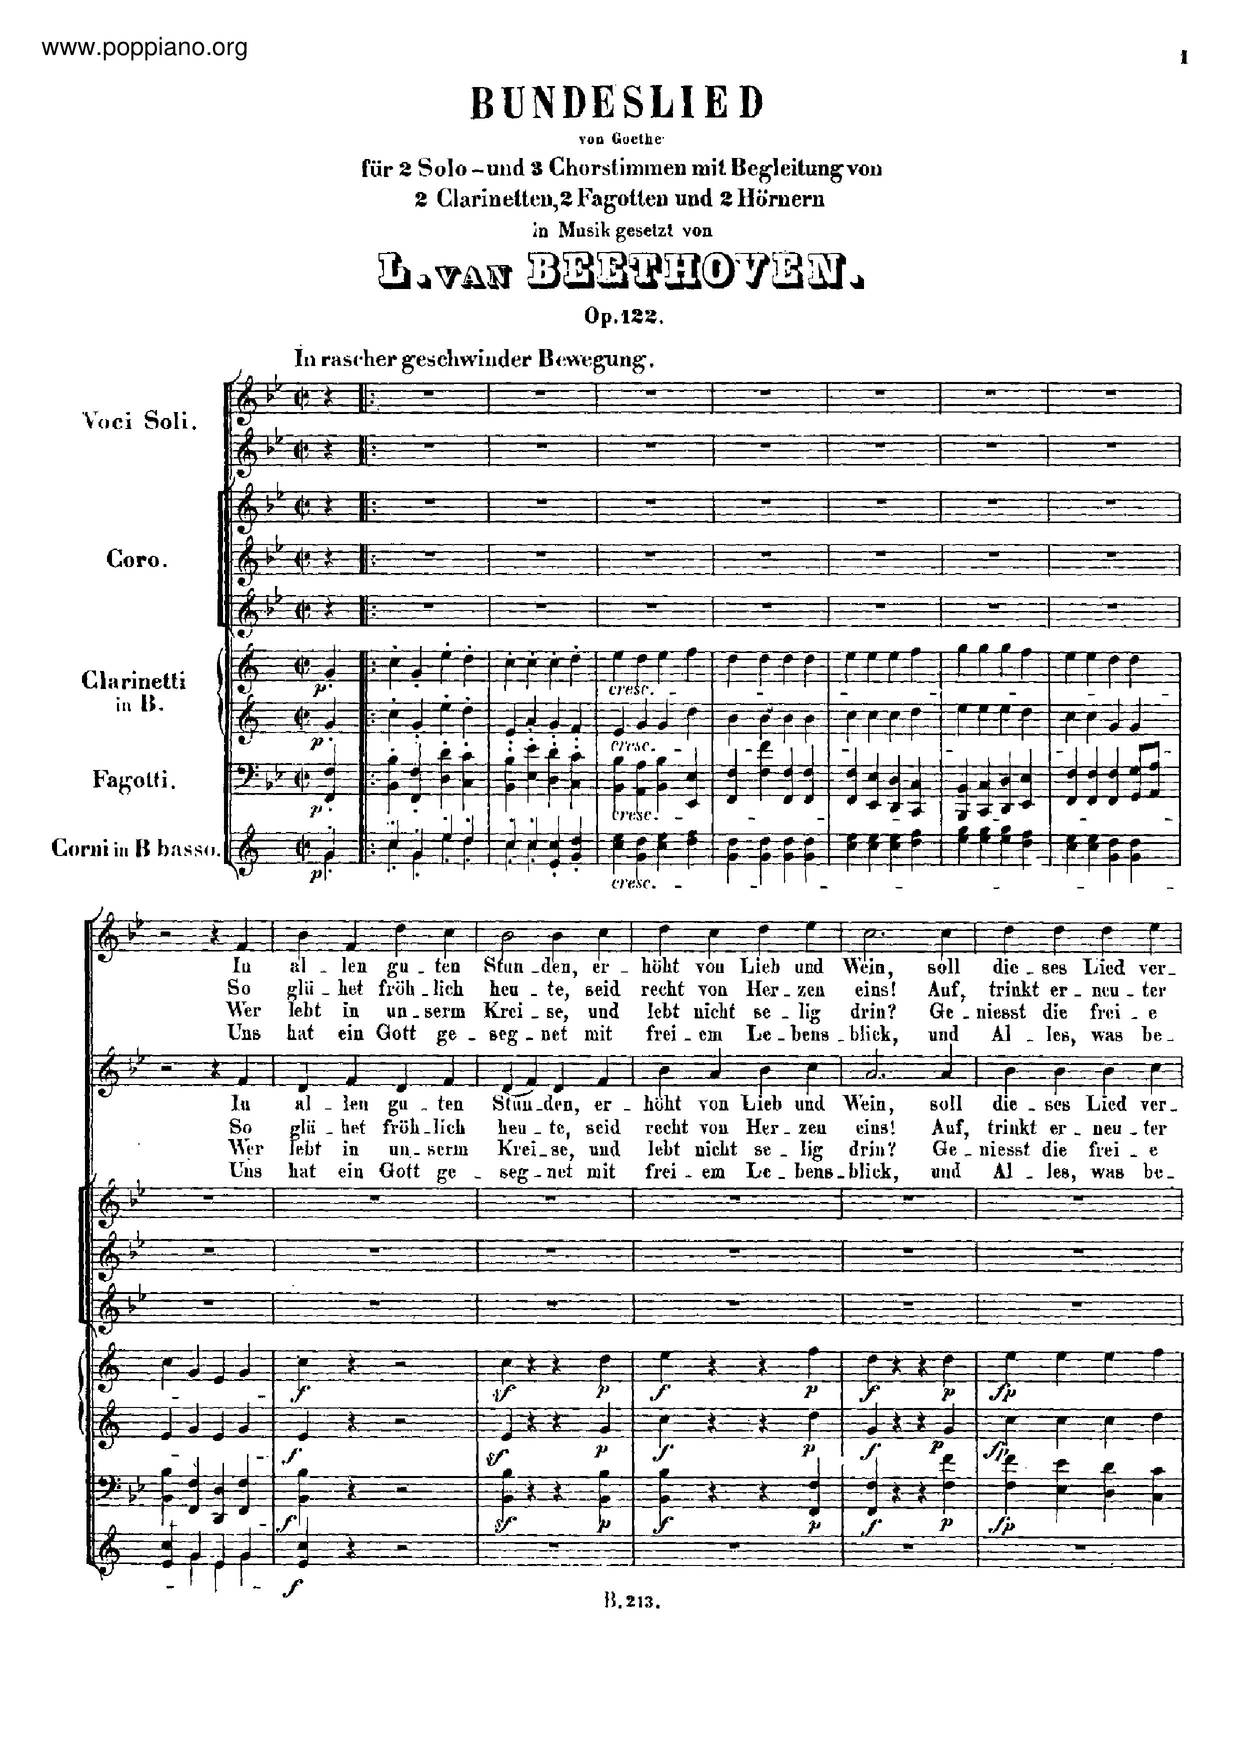 Bundeslied, Op. 122 Score